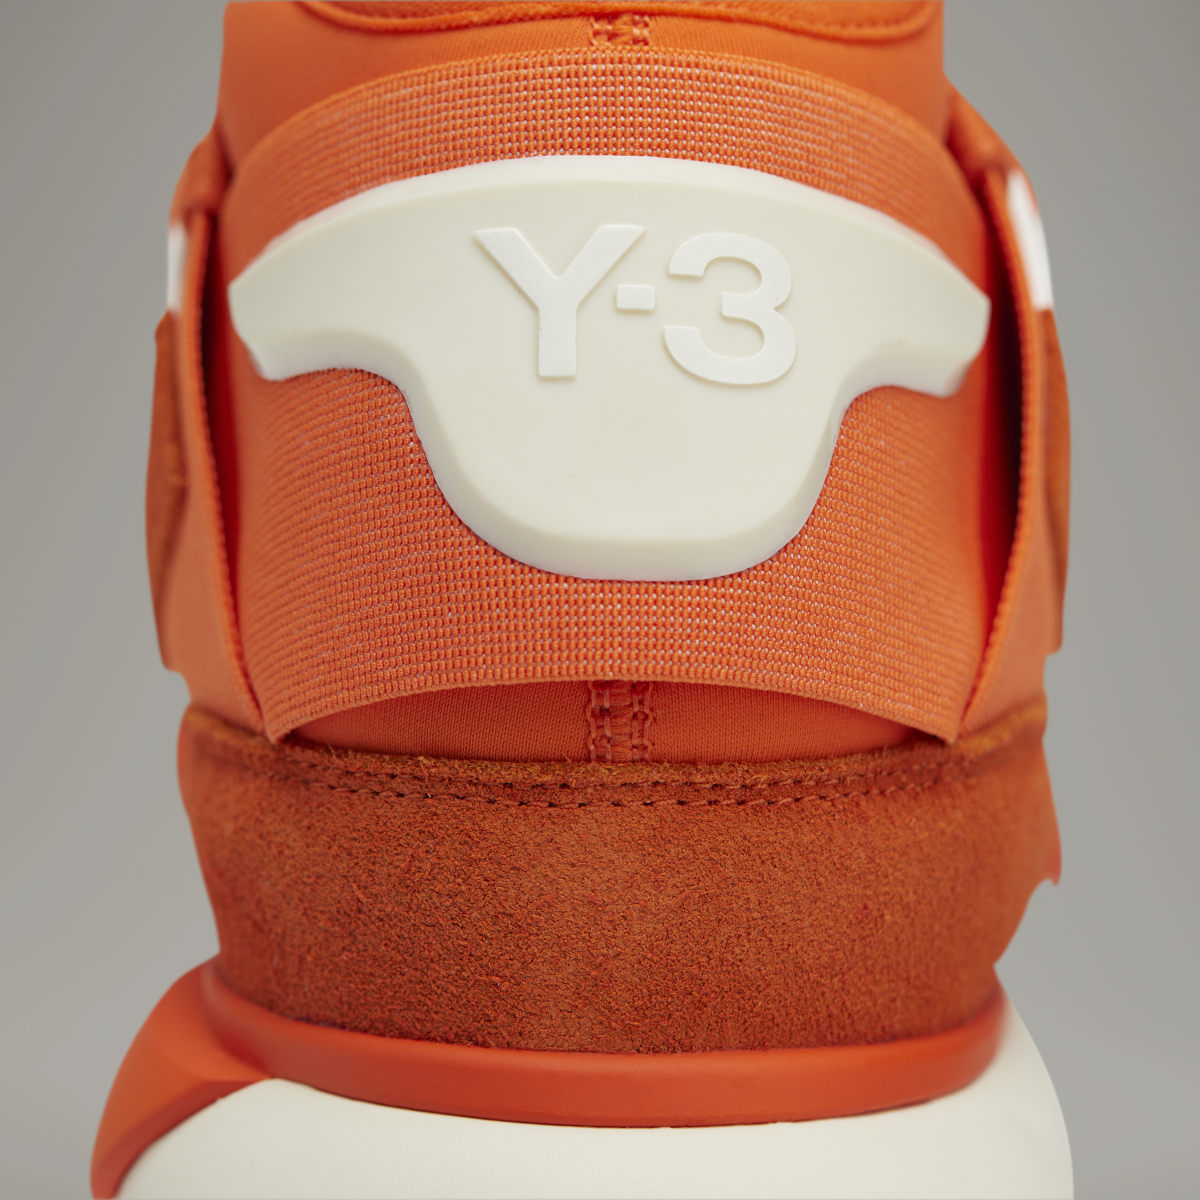 Adidas Y-3 Qasa High. 10